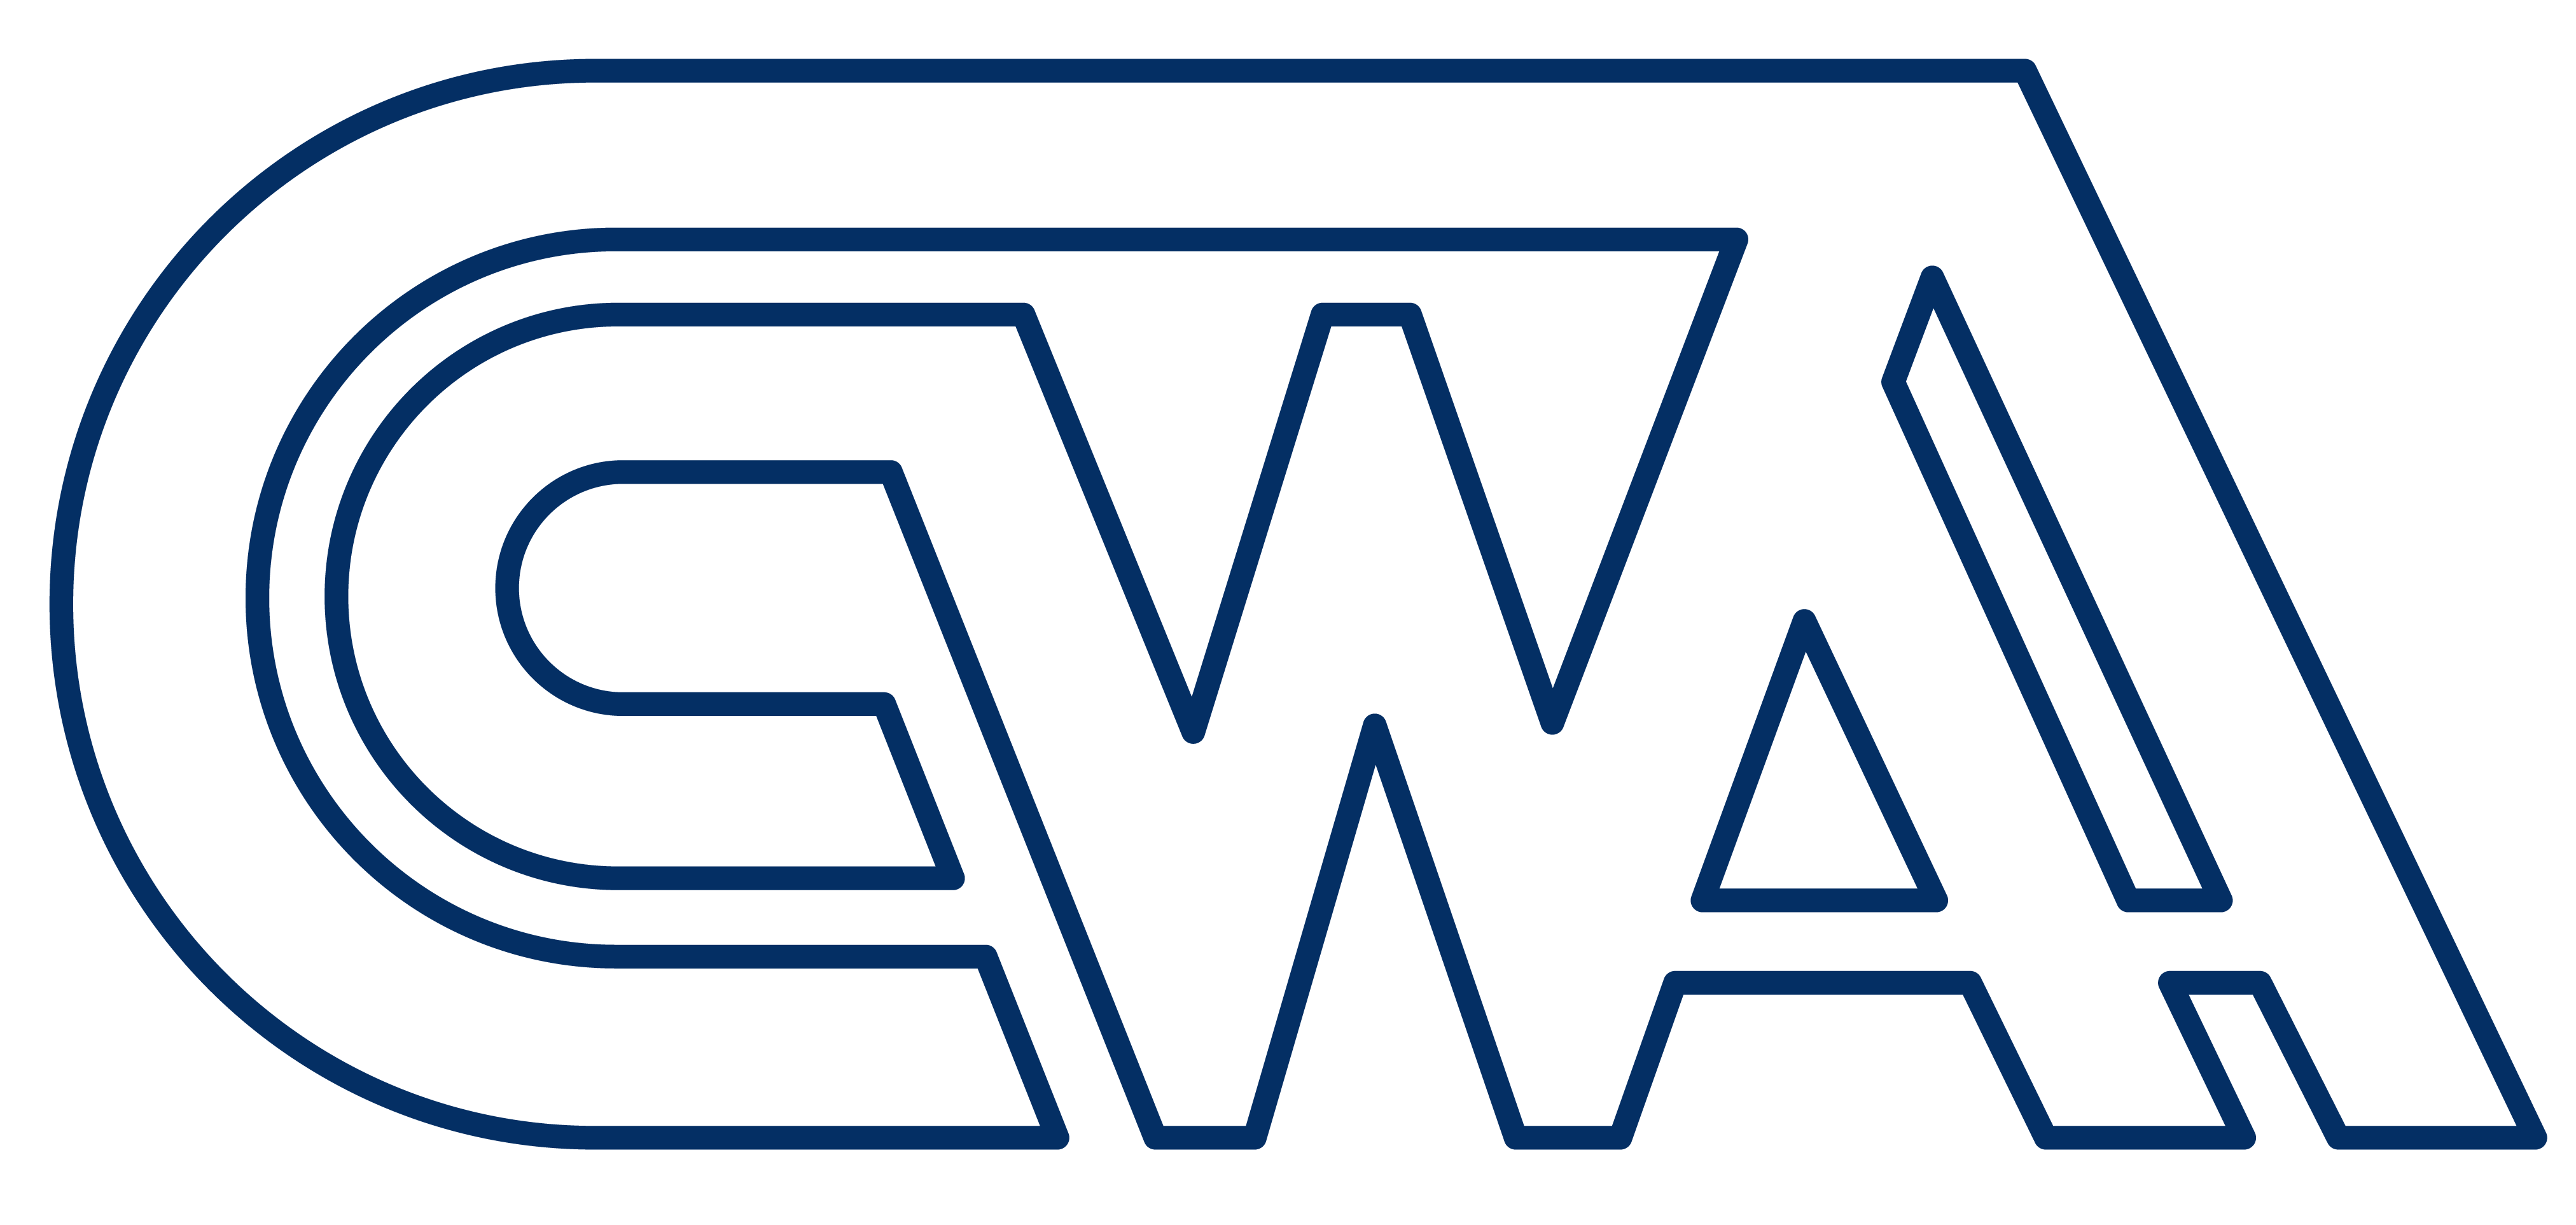 Original CCWAA Logo